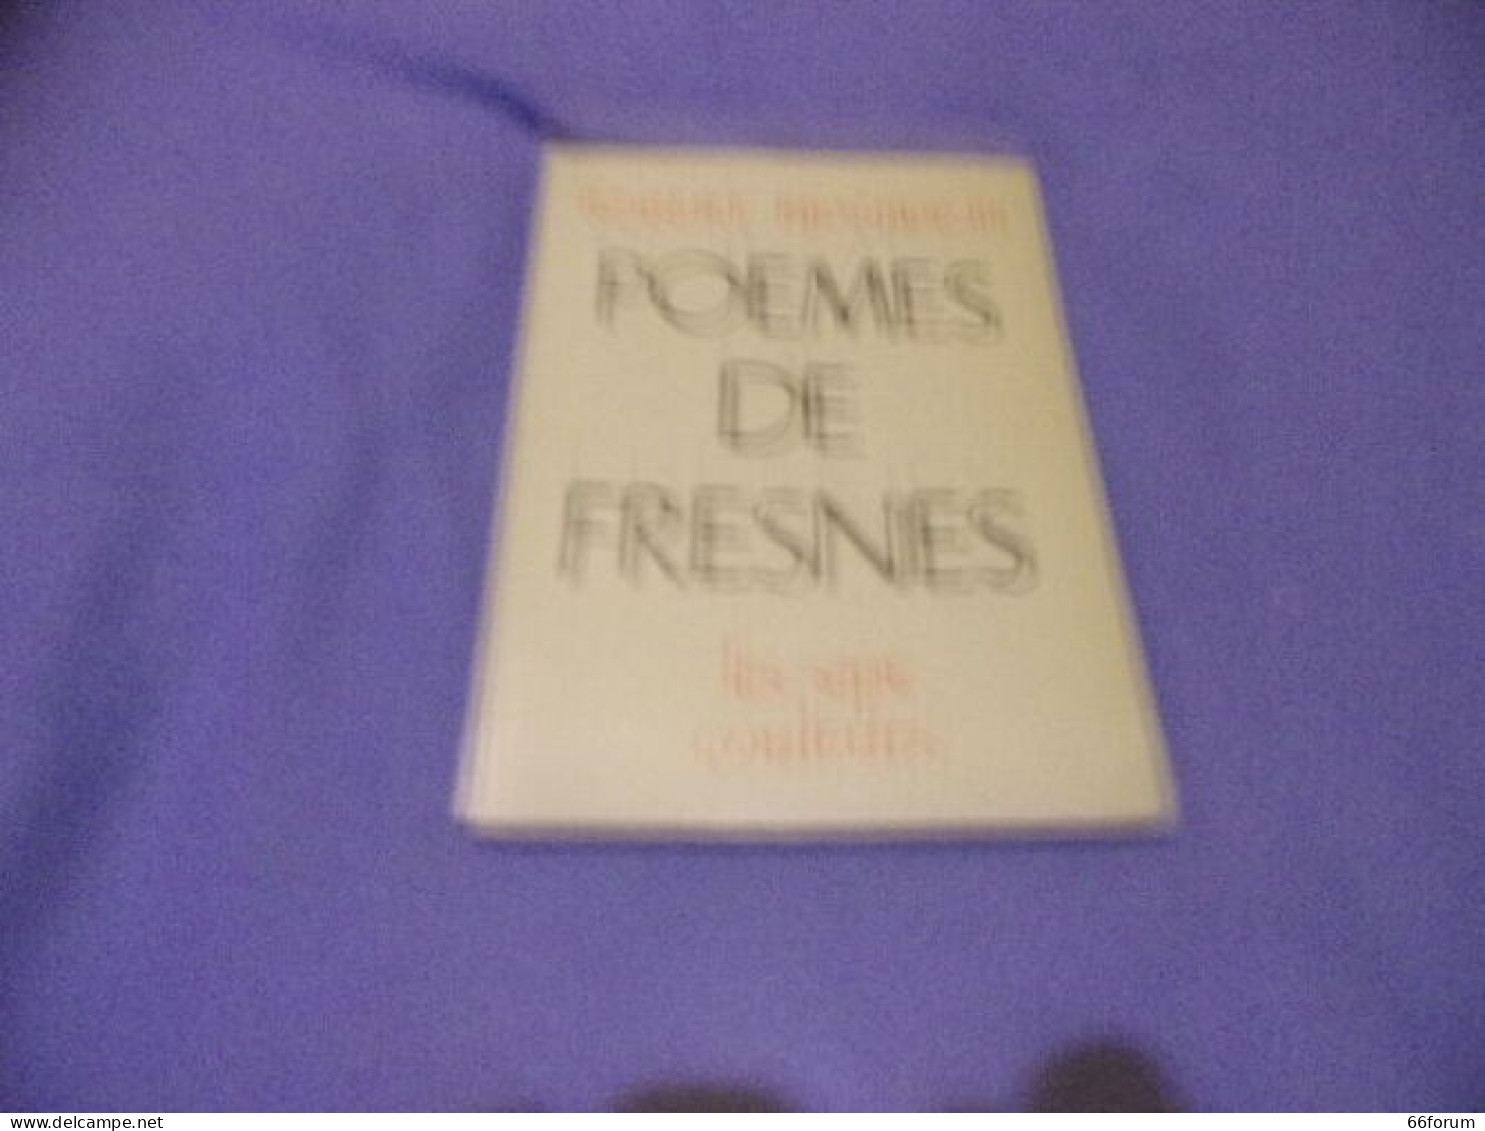 Poèmes De Fresnes - 1801-1900